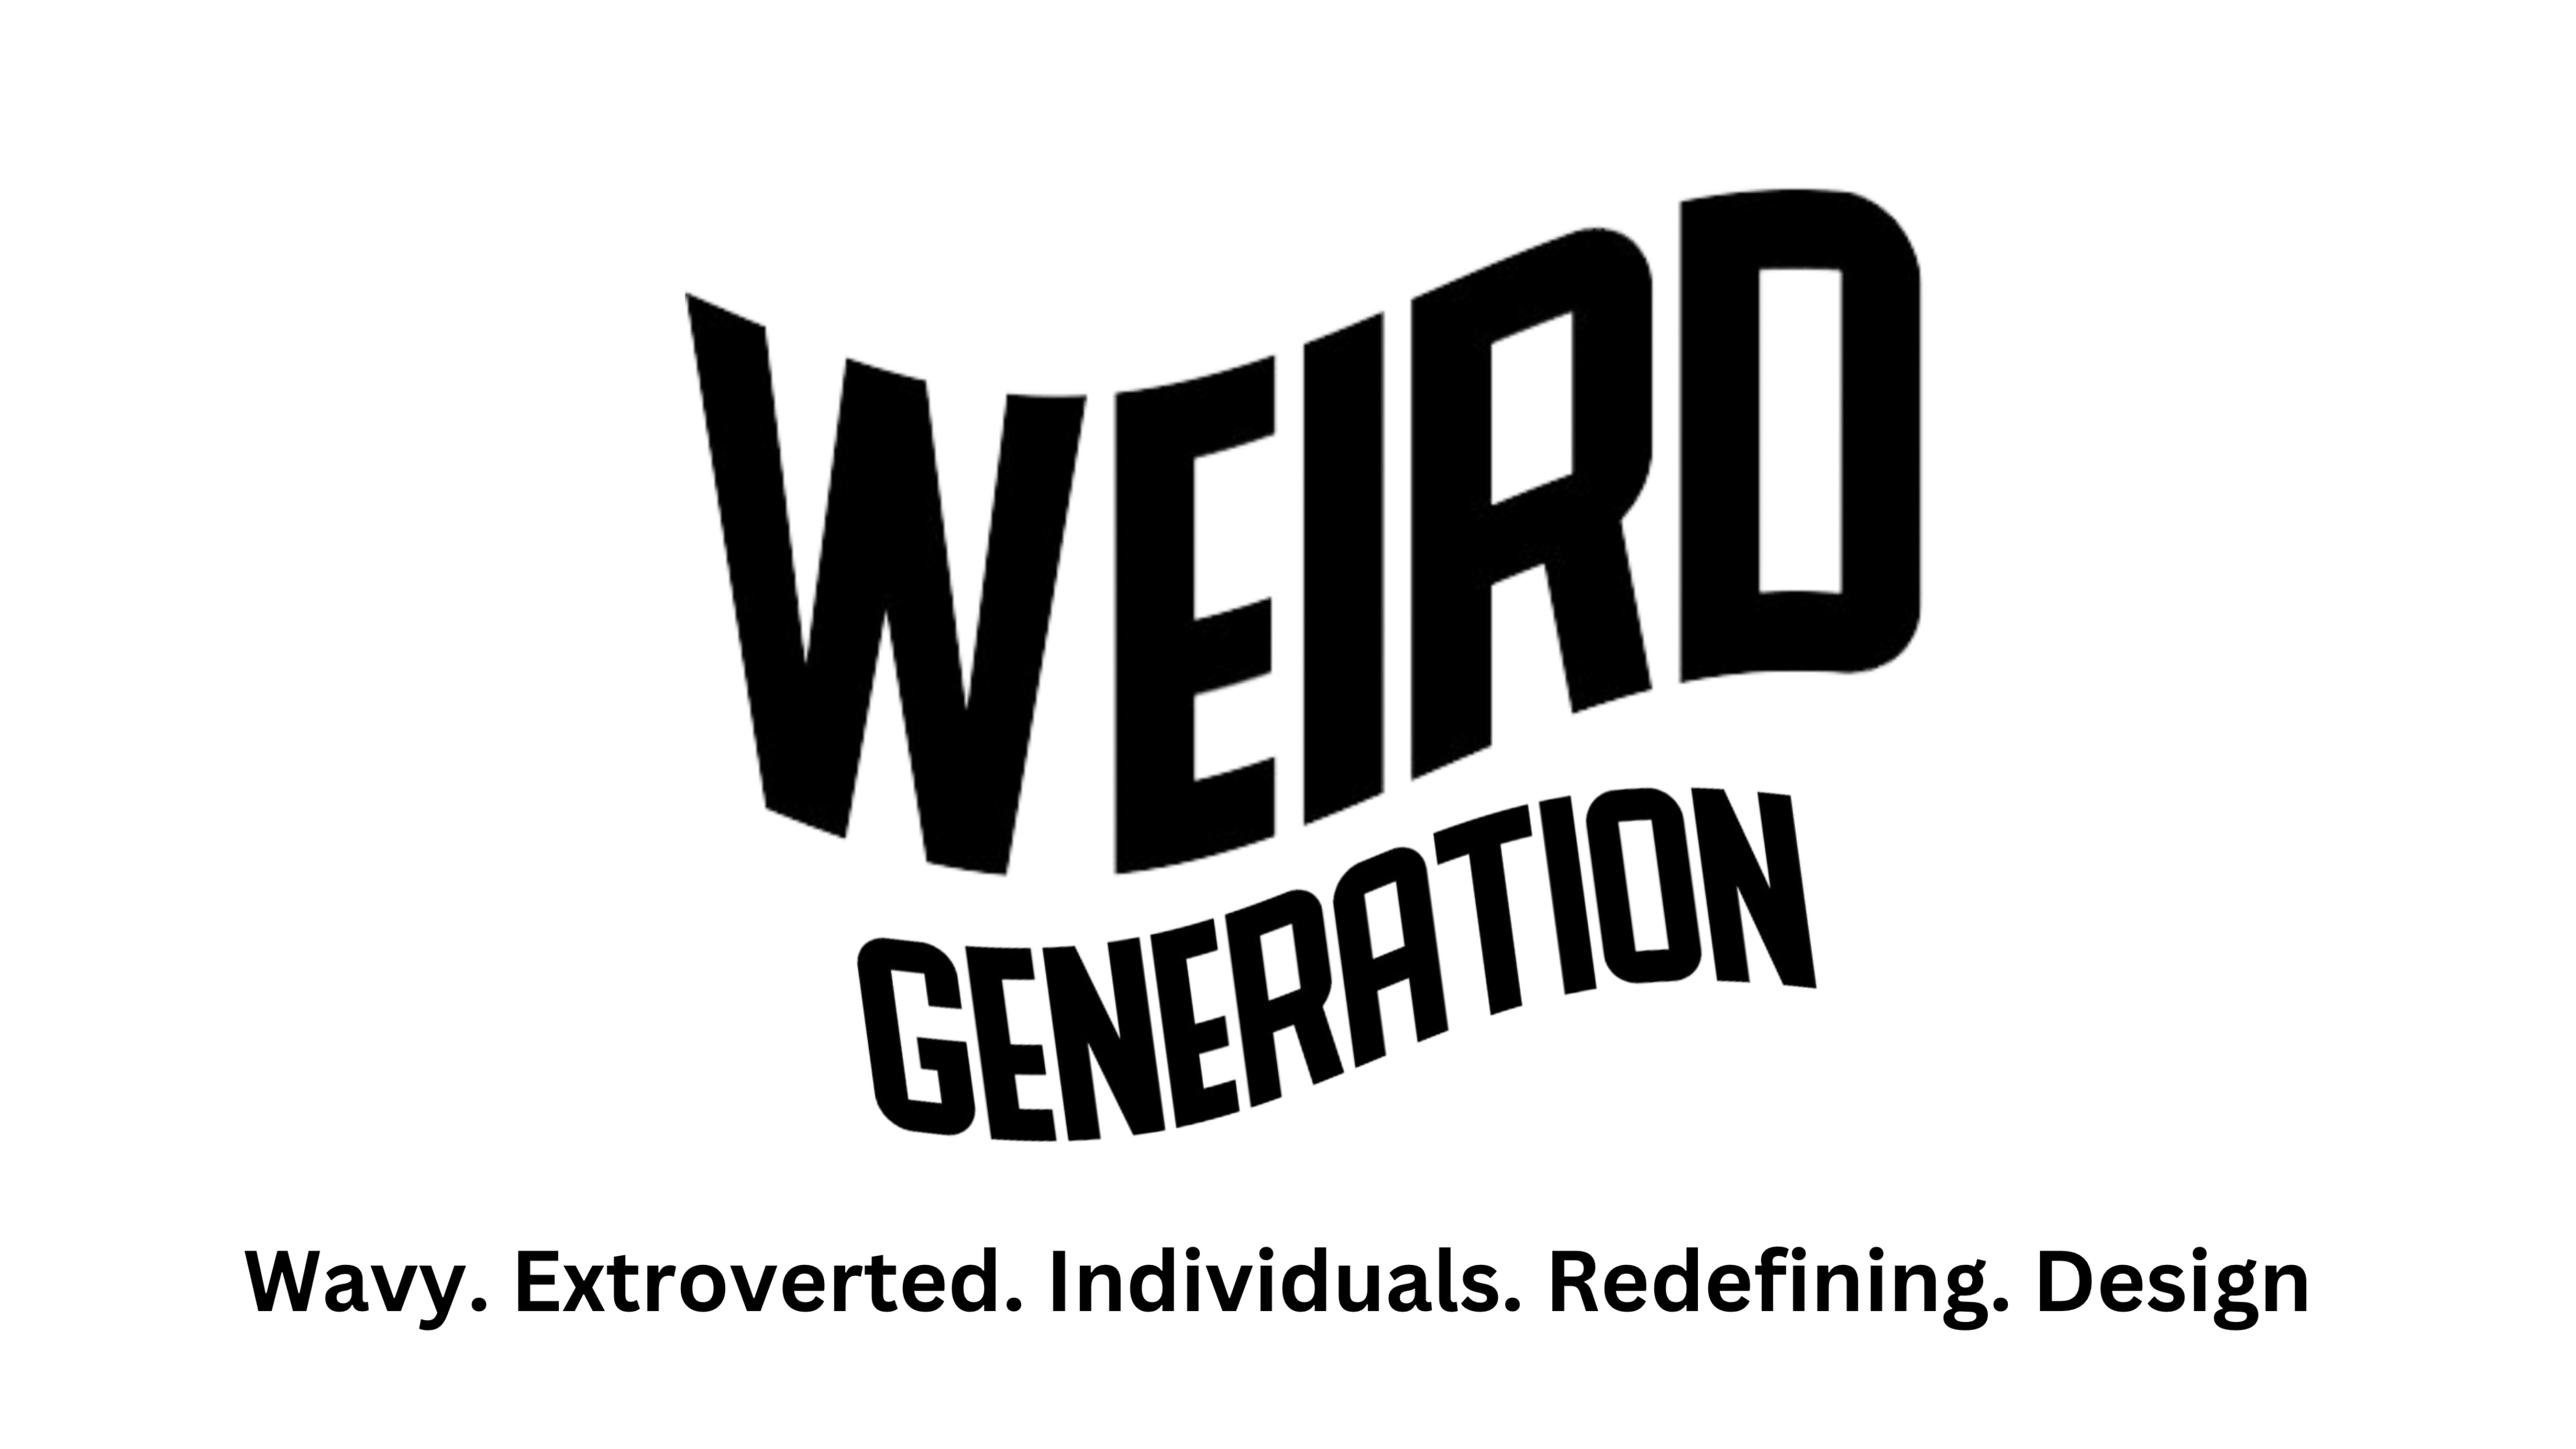 WEIRD Generation